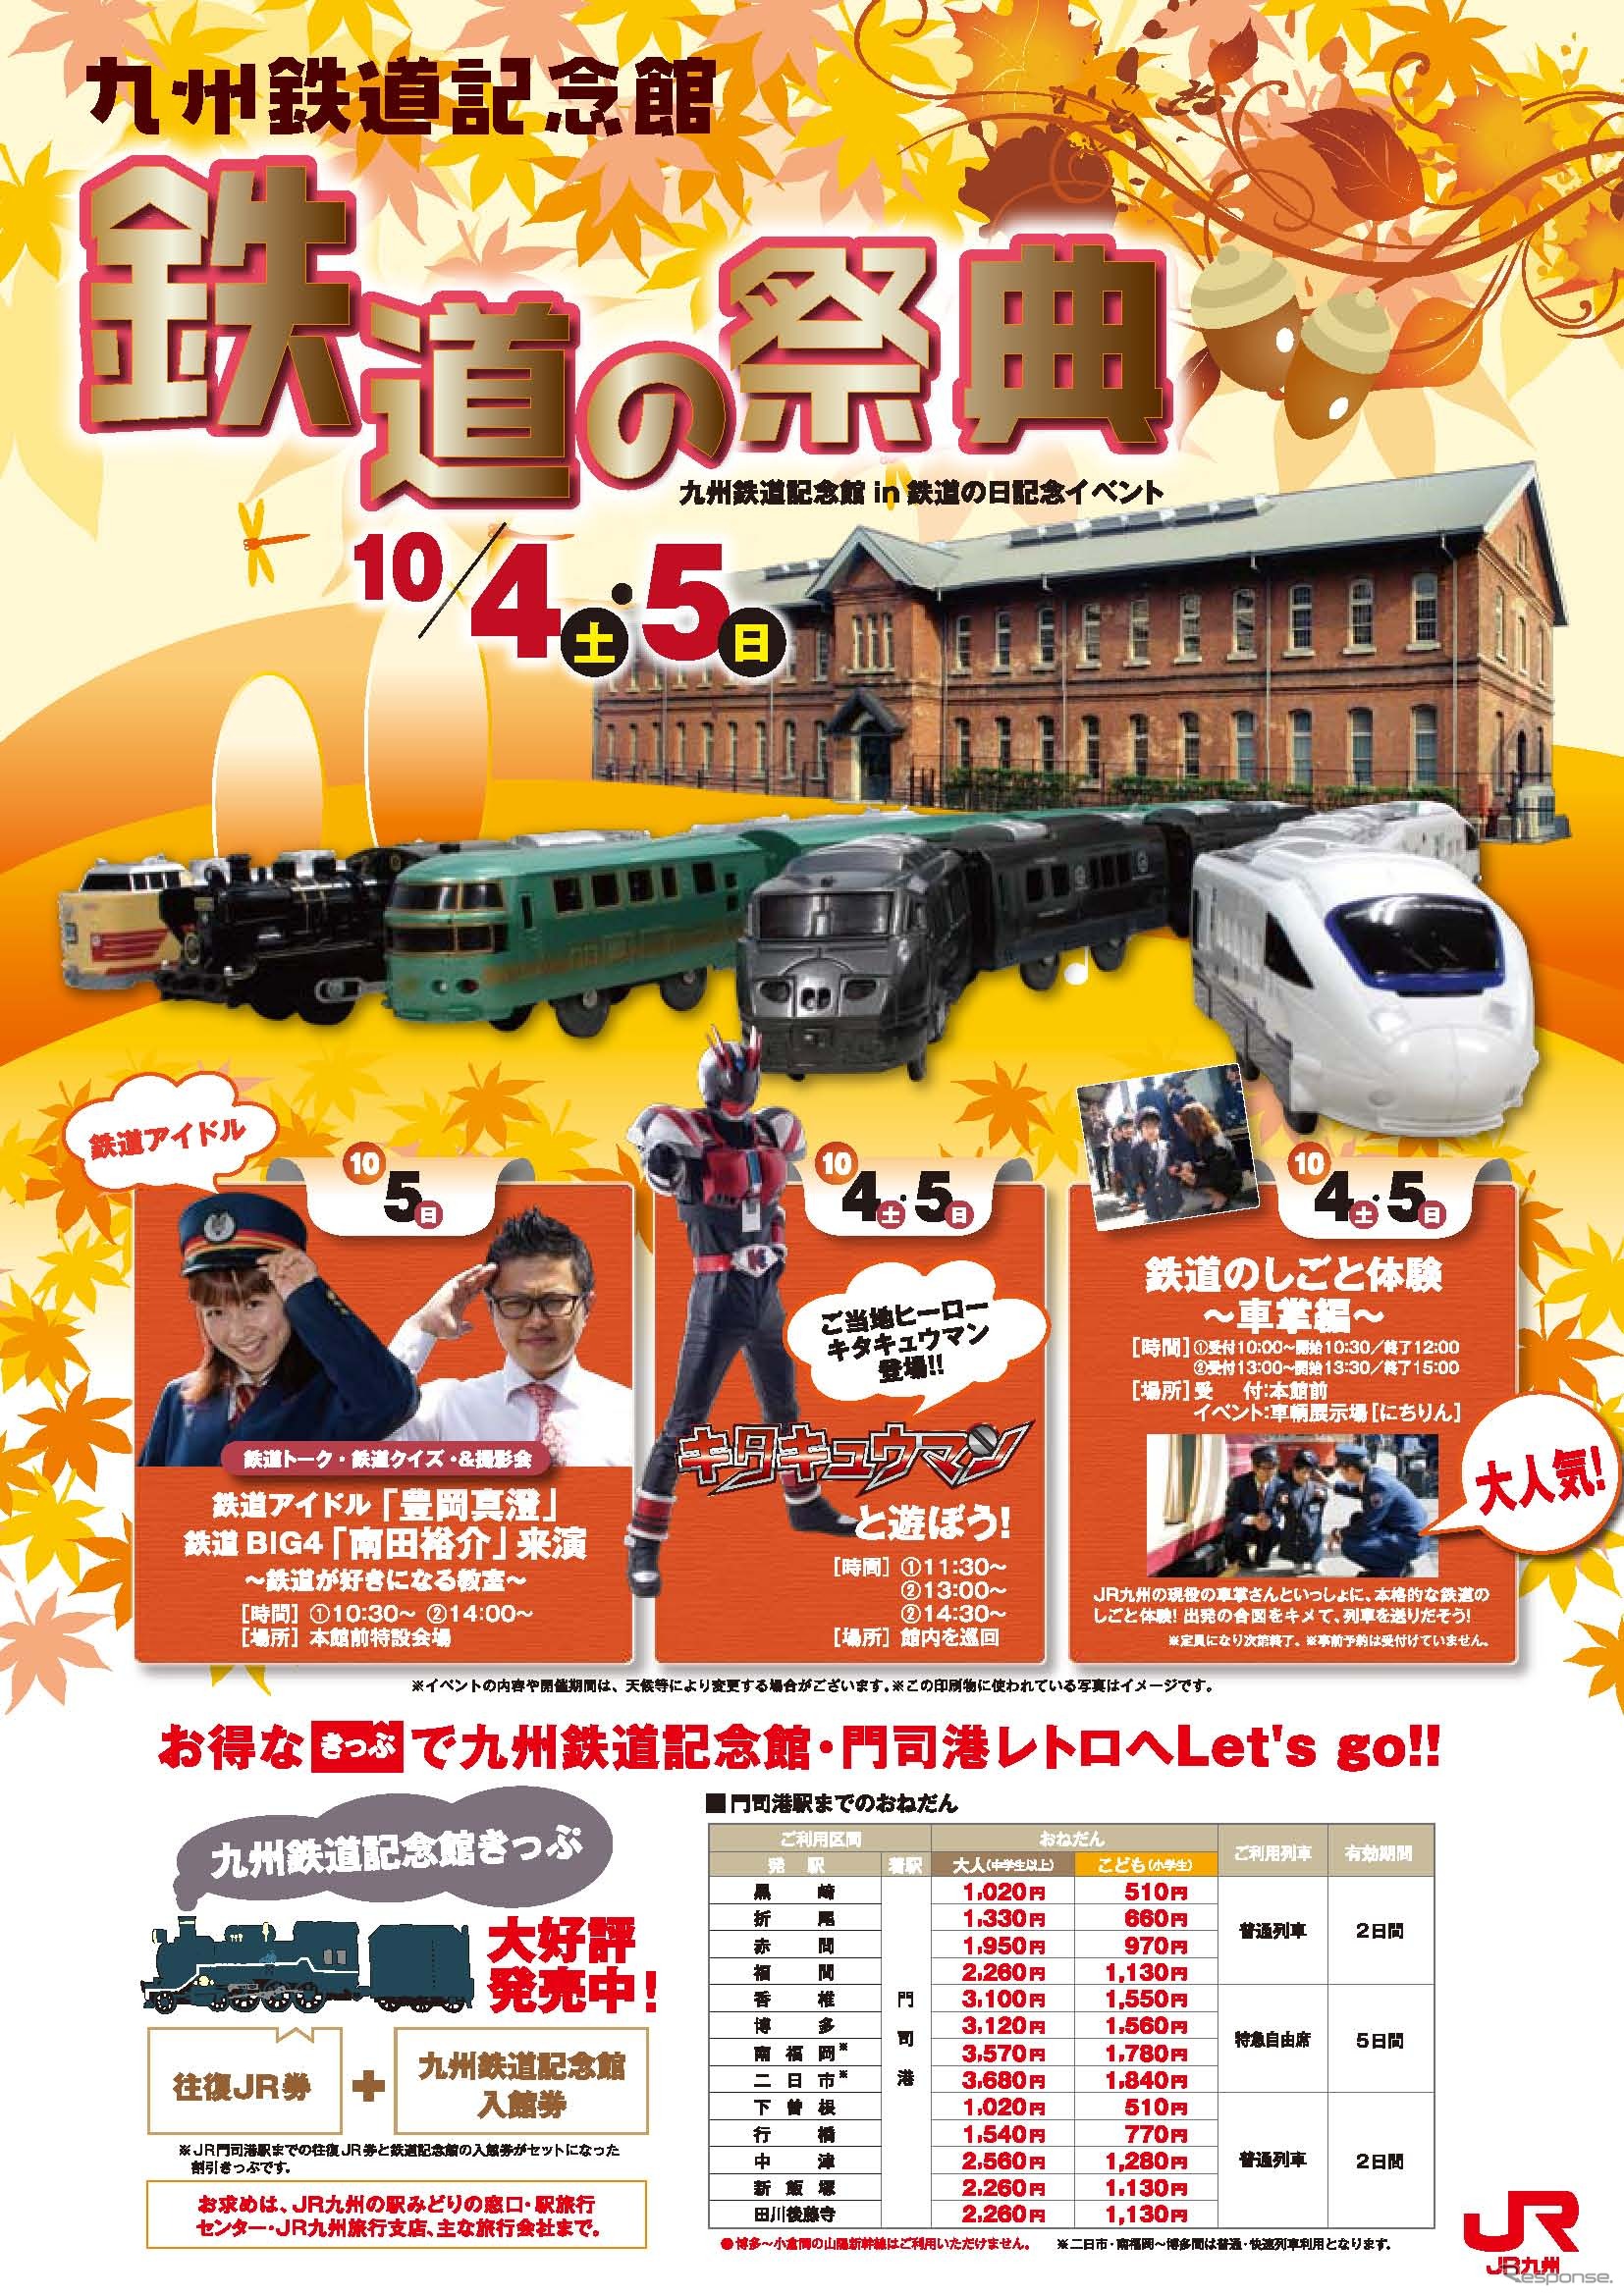 「鉄道の祭典」の案内。今年は10月4・5日に開催される。